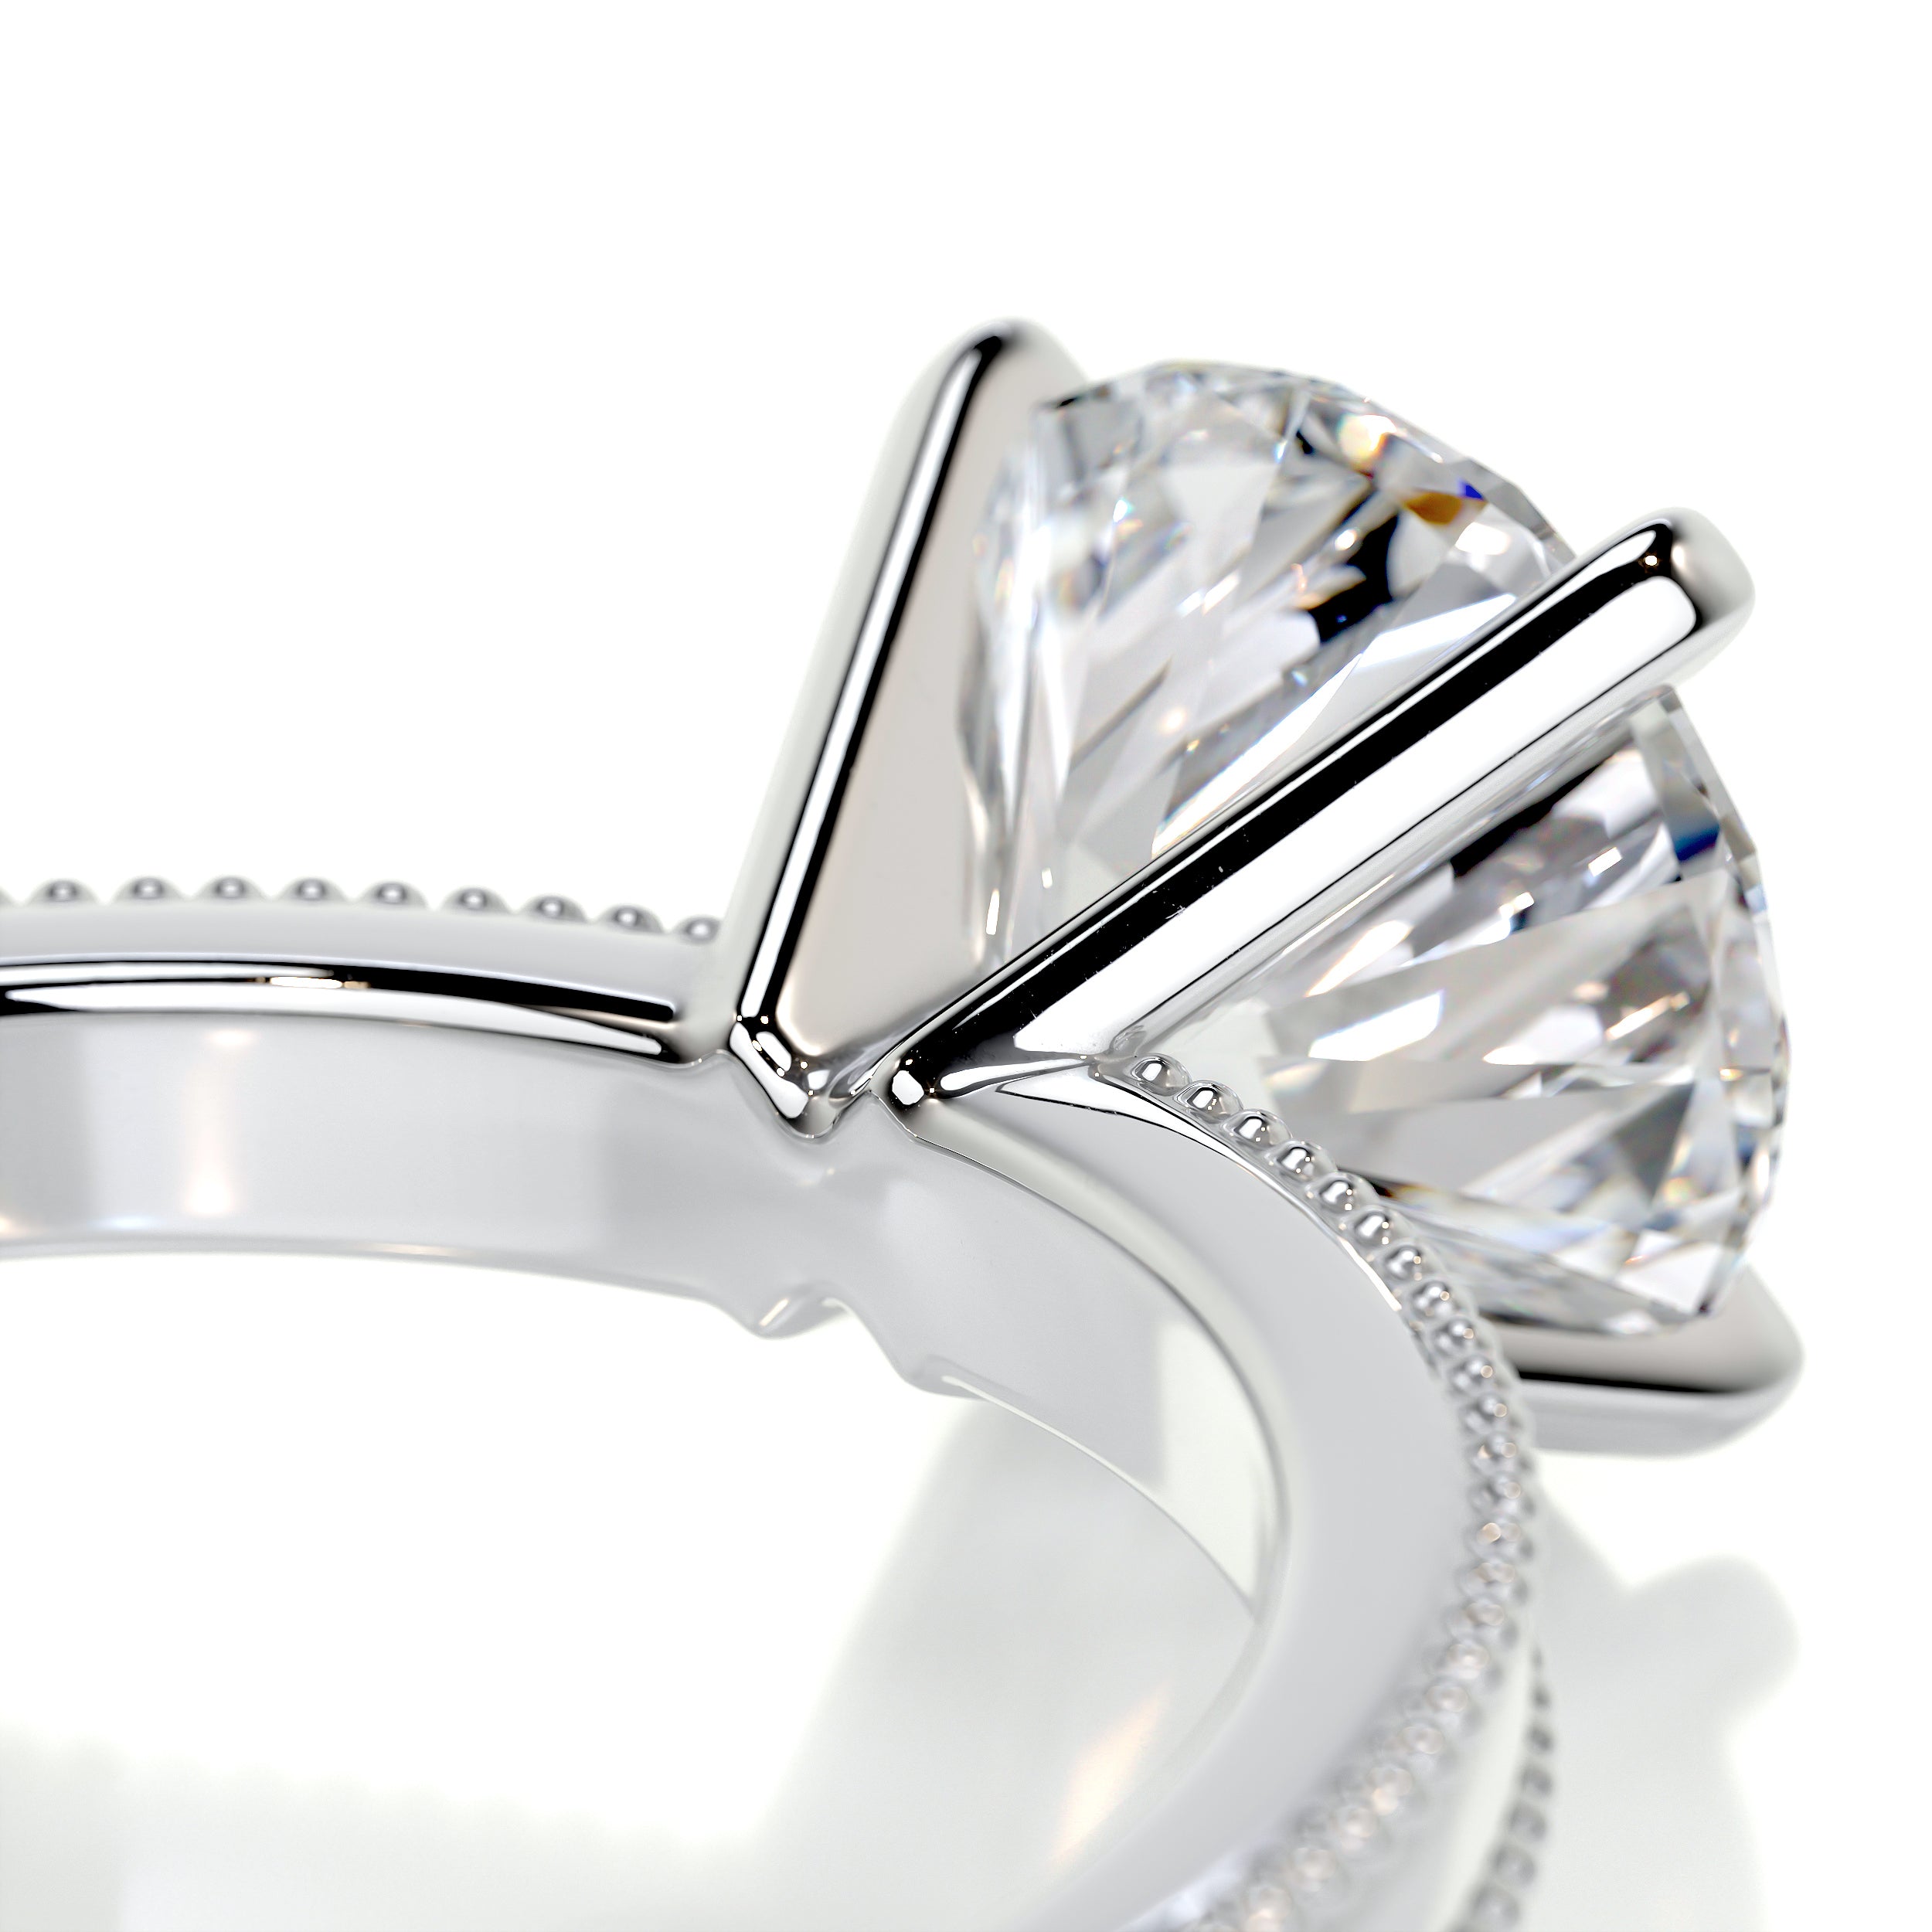 Charlie Diamond Engagement Ring -14K White Gold